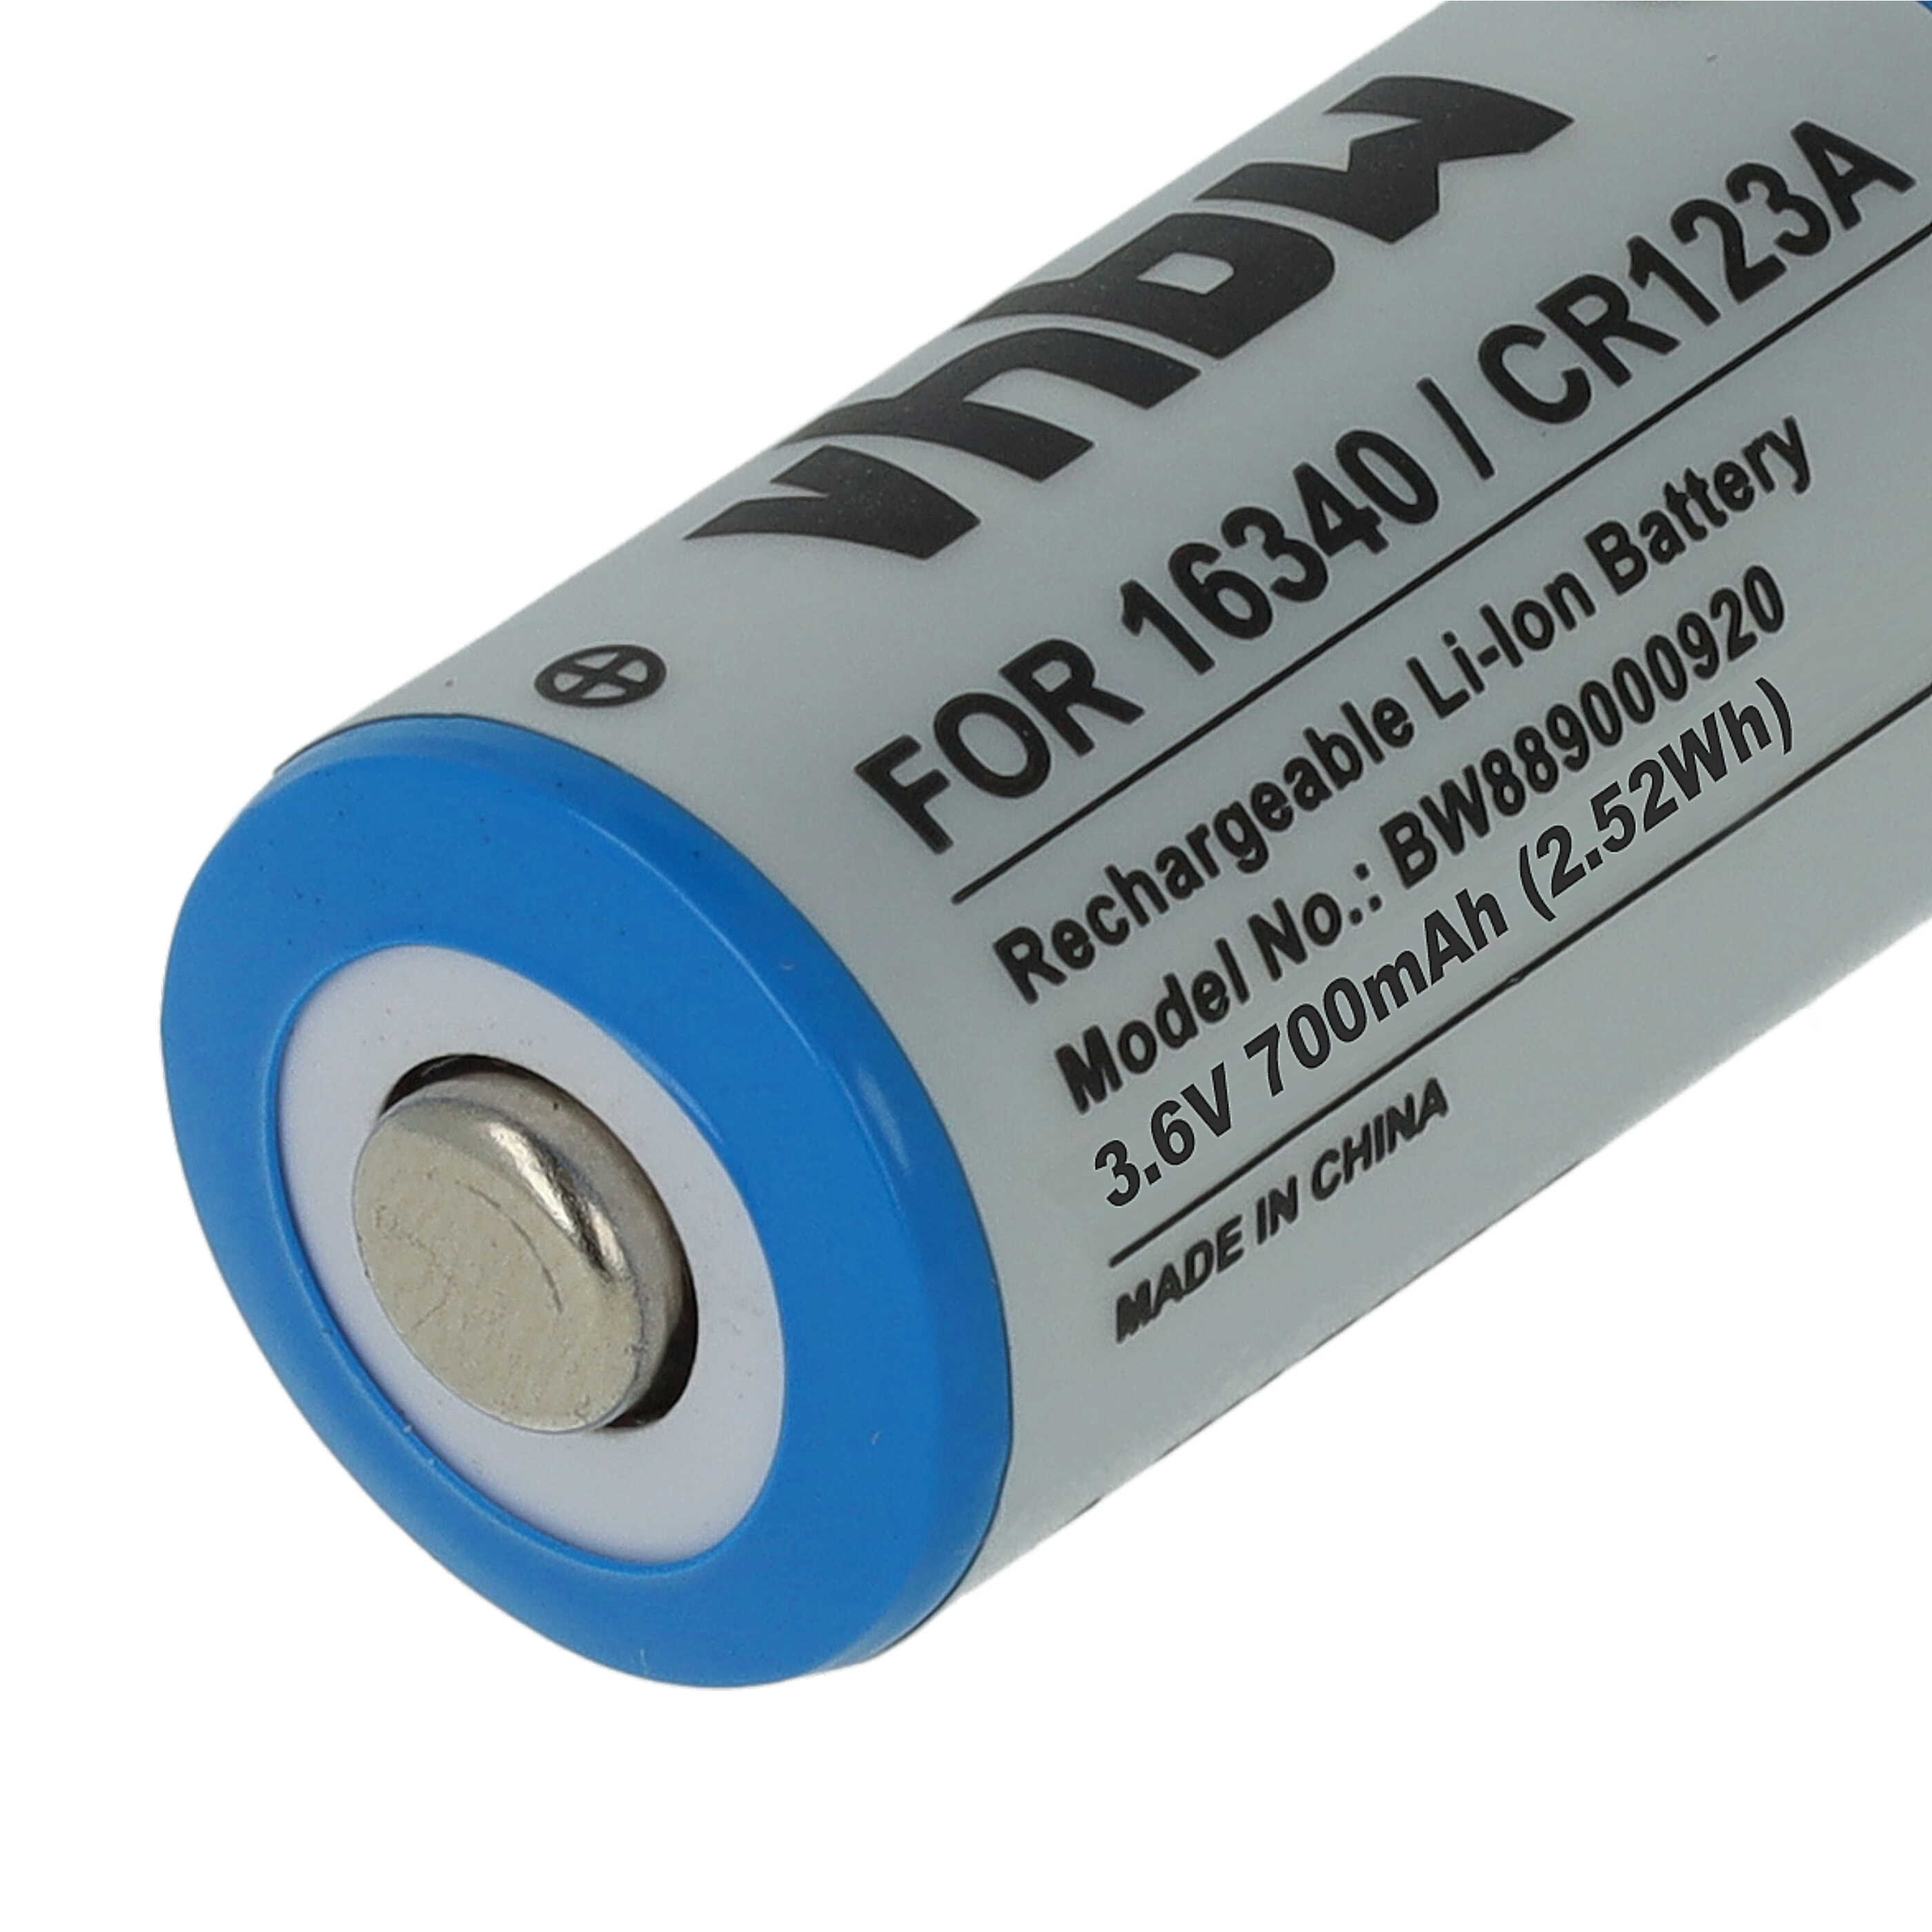 Batteries (10x pièces) remplace 16340, CR123R, CR17335, CR17345, CR123A - 700mAh 3,6V Li-ion, 1x cellules